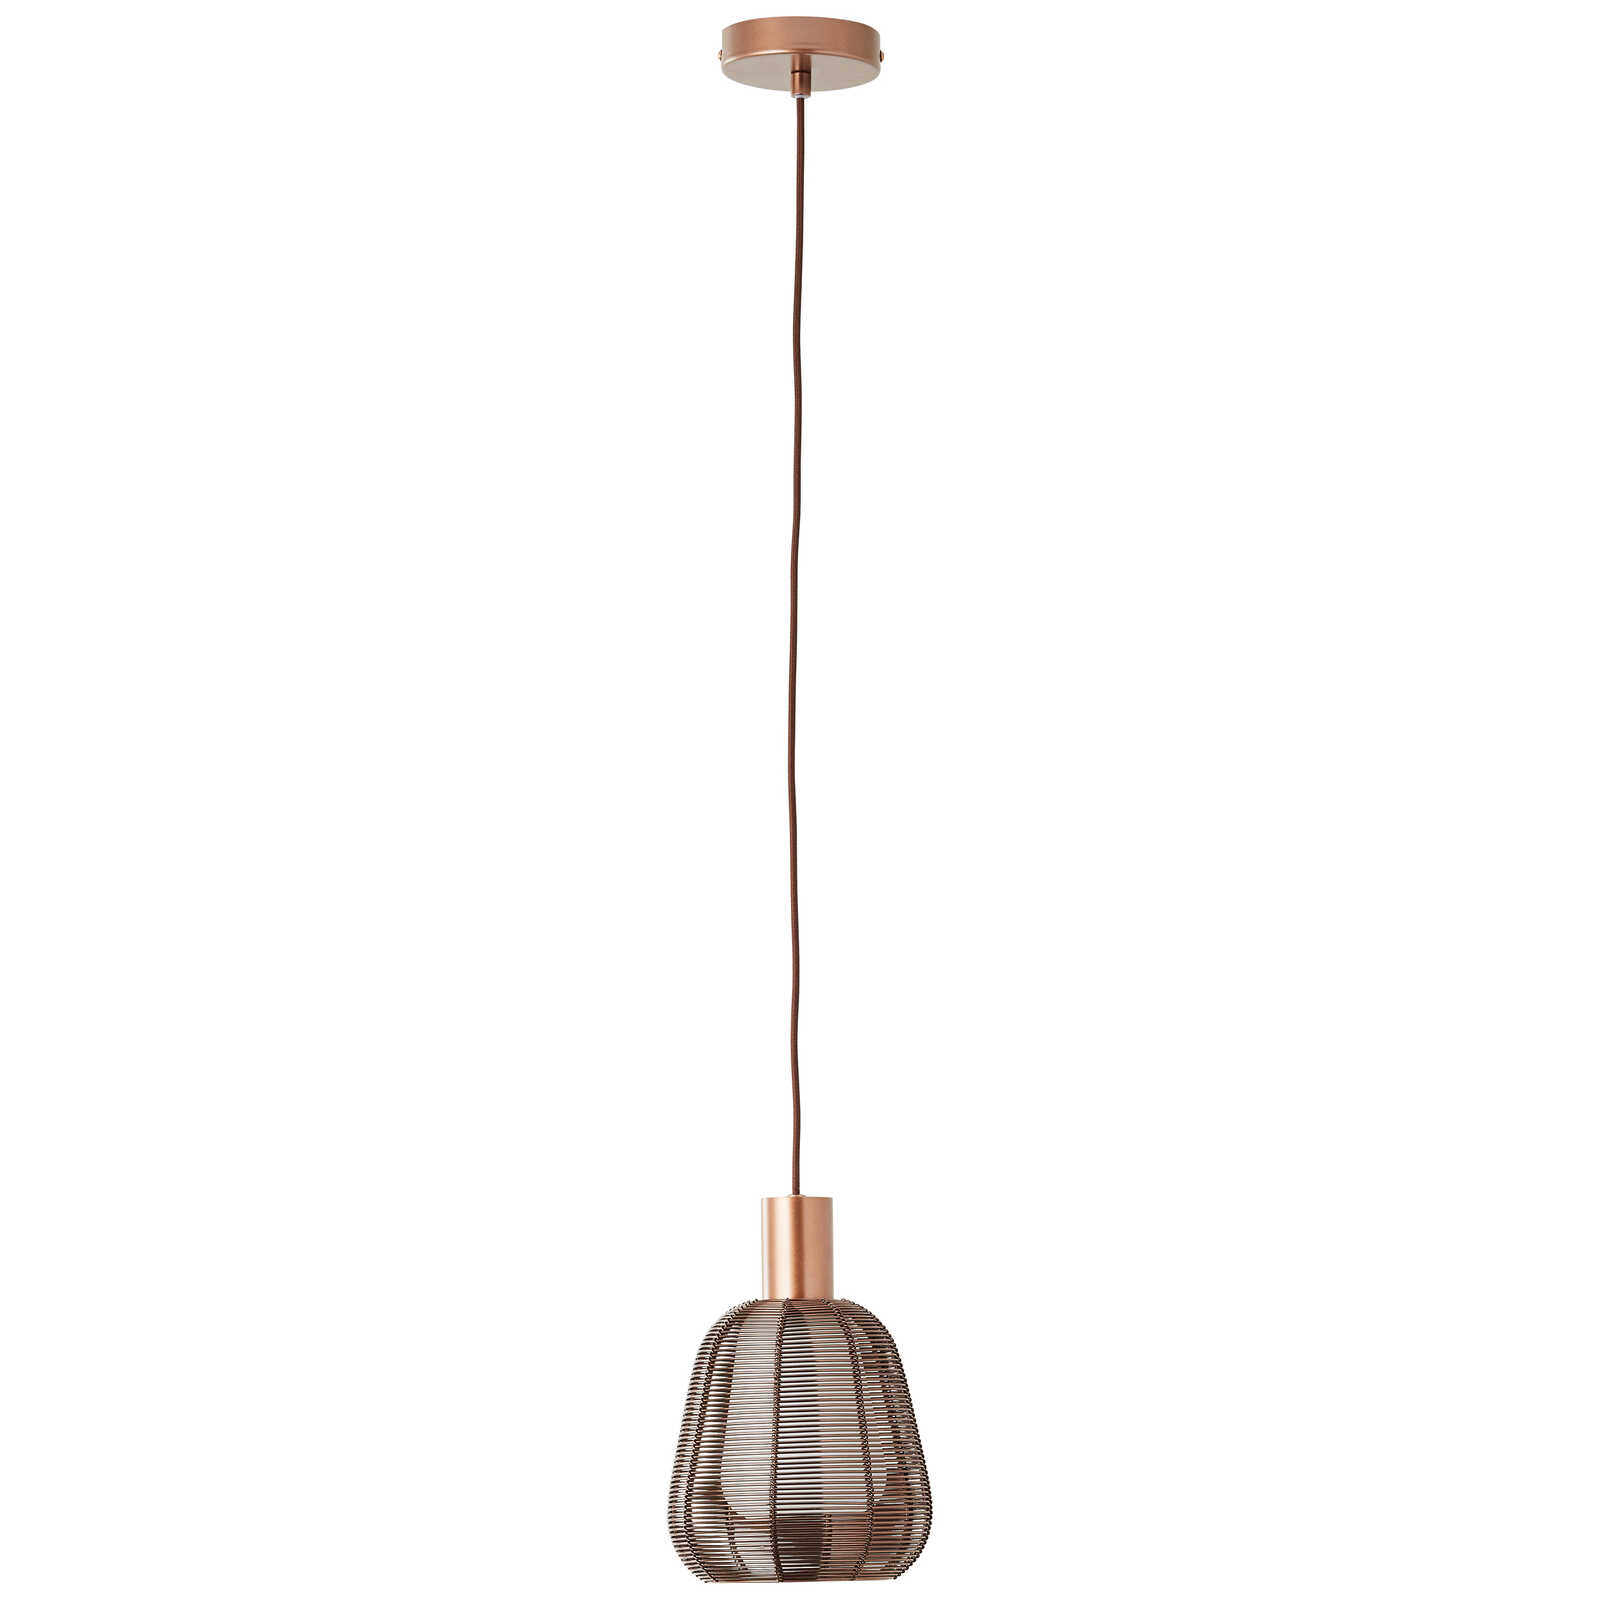             Metalen hanglamp - Thore 1 - Bruin
        